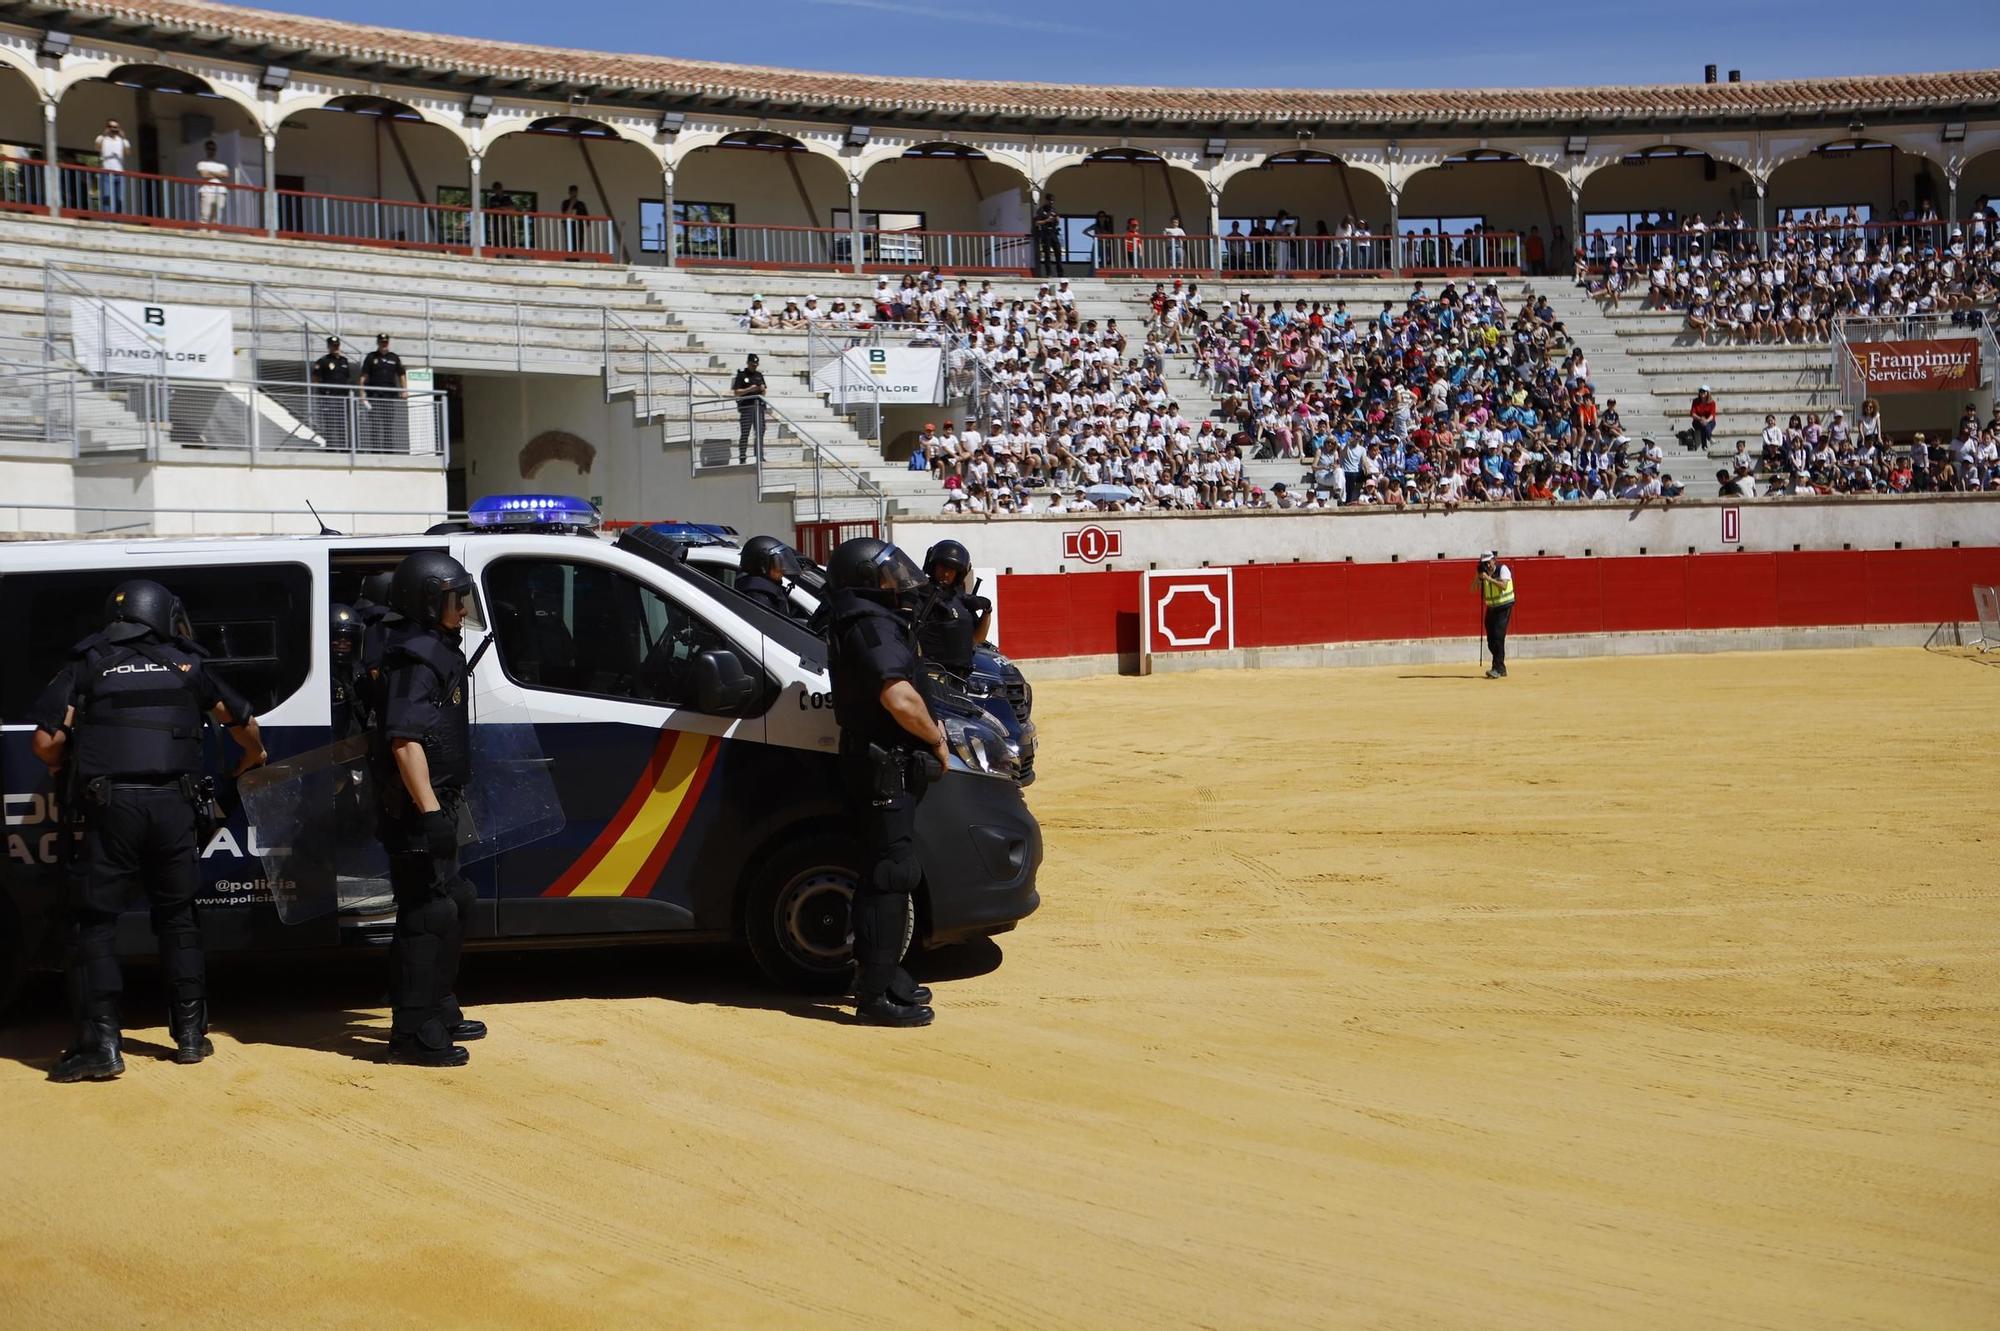 Ehibición policial en Lorca por su 200 aniversario